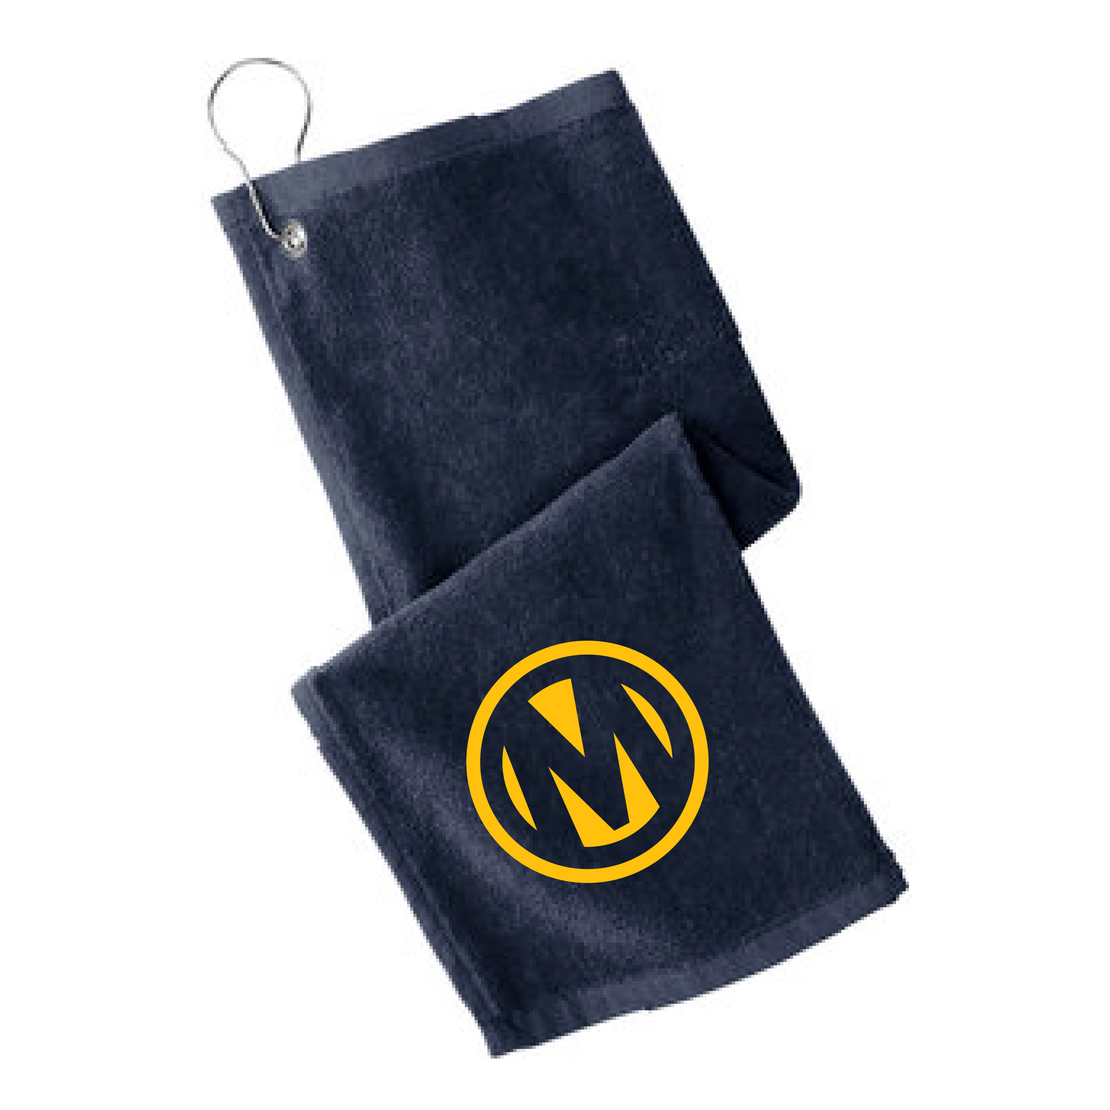 Manheim Golf Shoe Bag & Towel